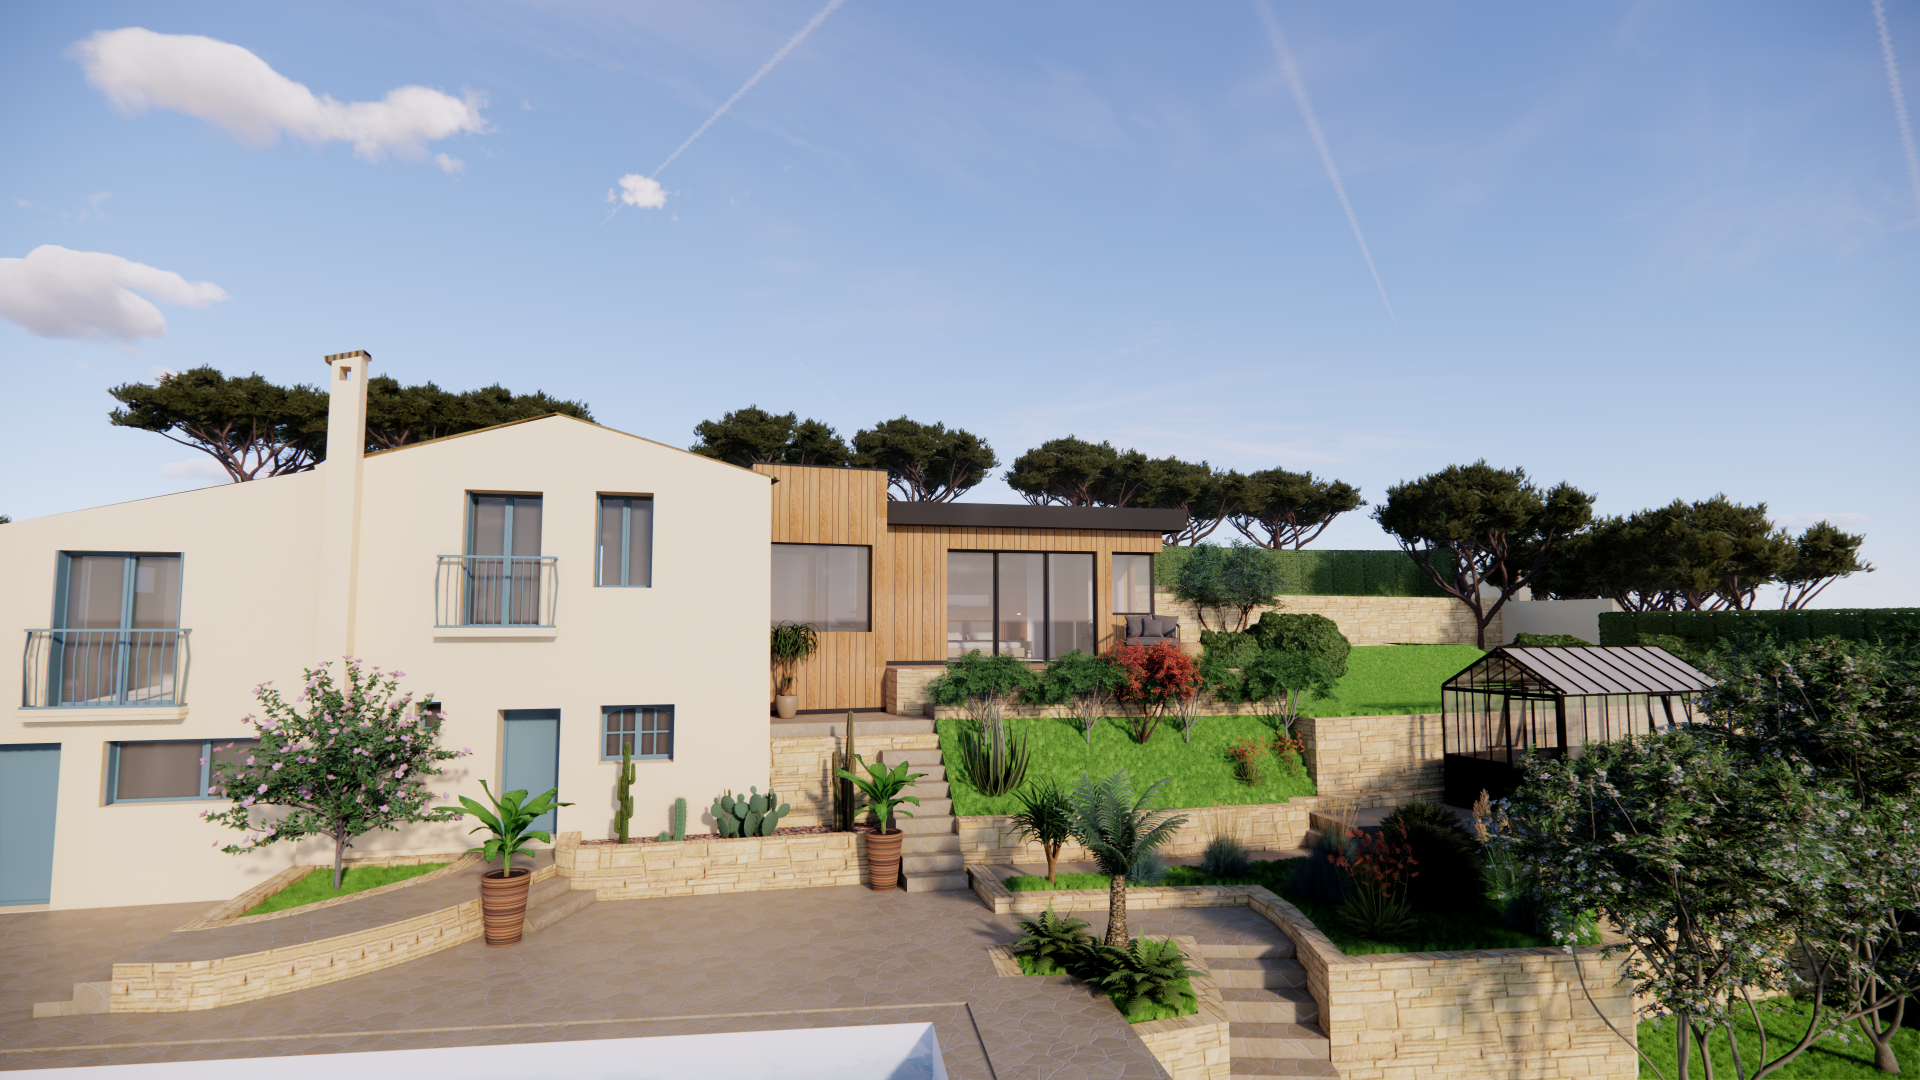 visuel 3 D d'une villa au jardin arboré ayant obtenu un permis de construire pour une extension